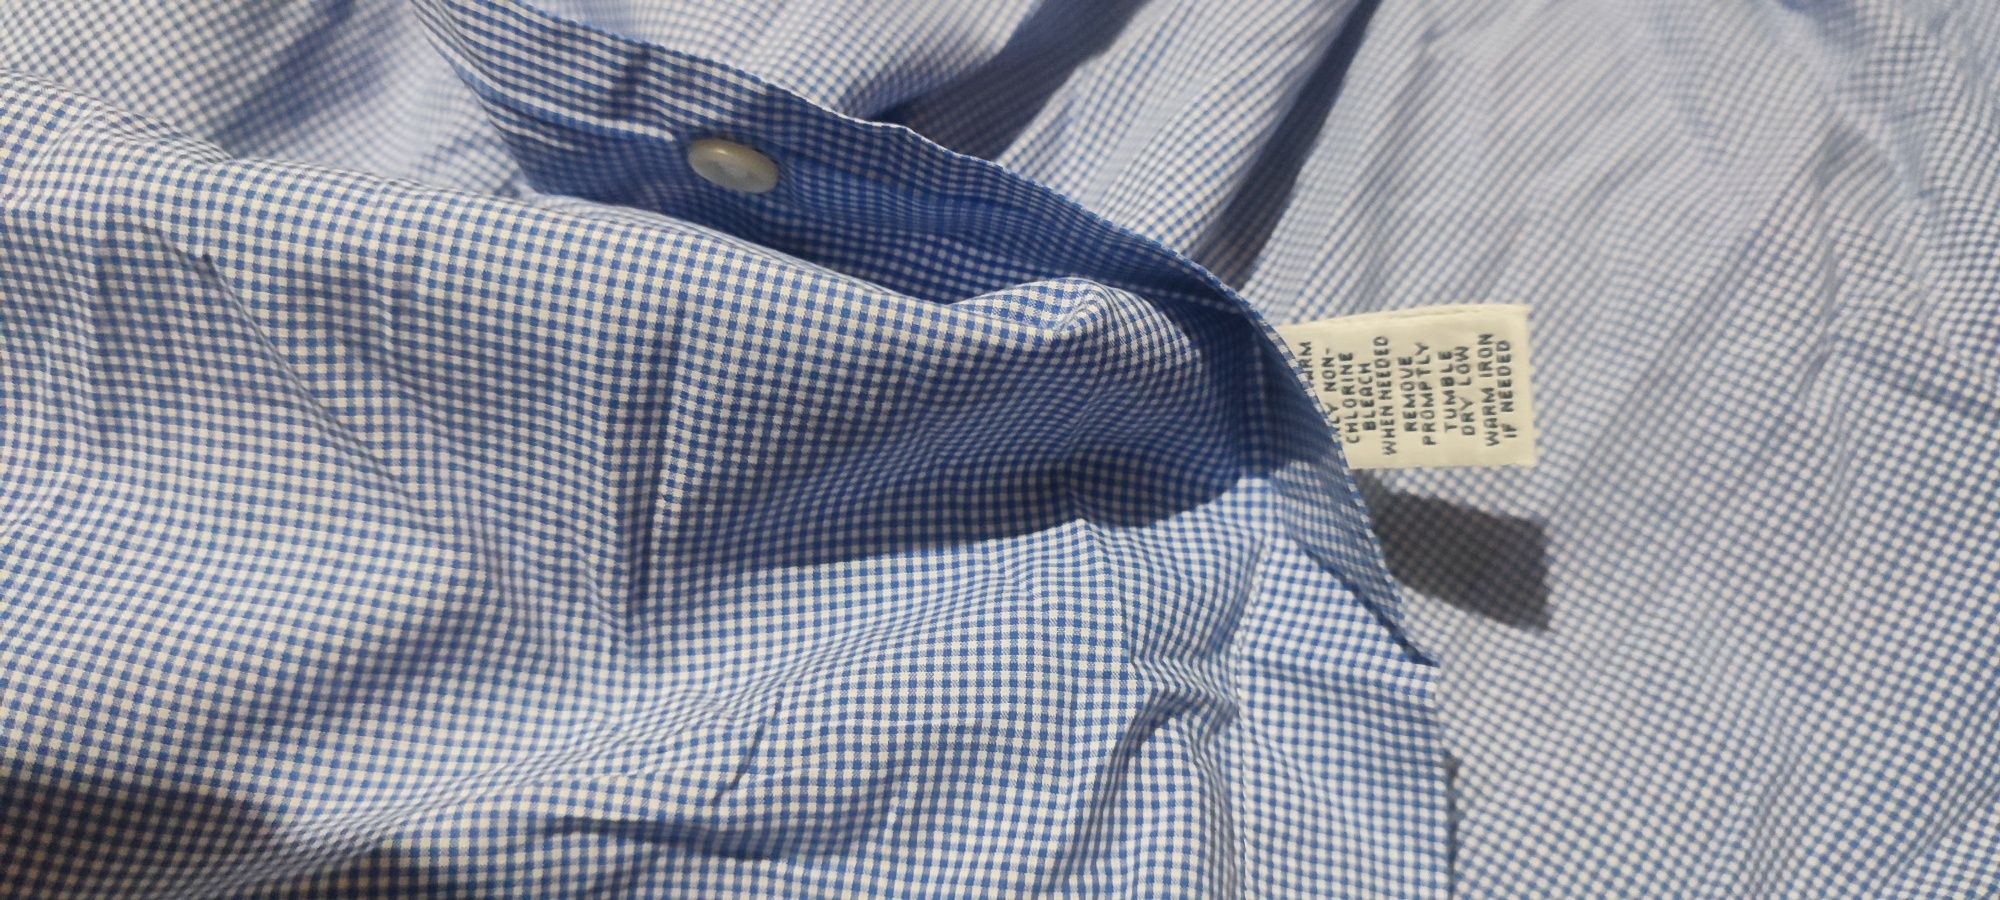 Продам класну орігінальну чоловічу сорочку Ralph Lauren розмір L.